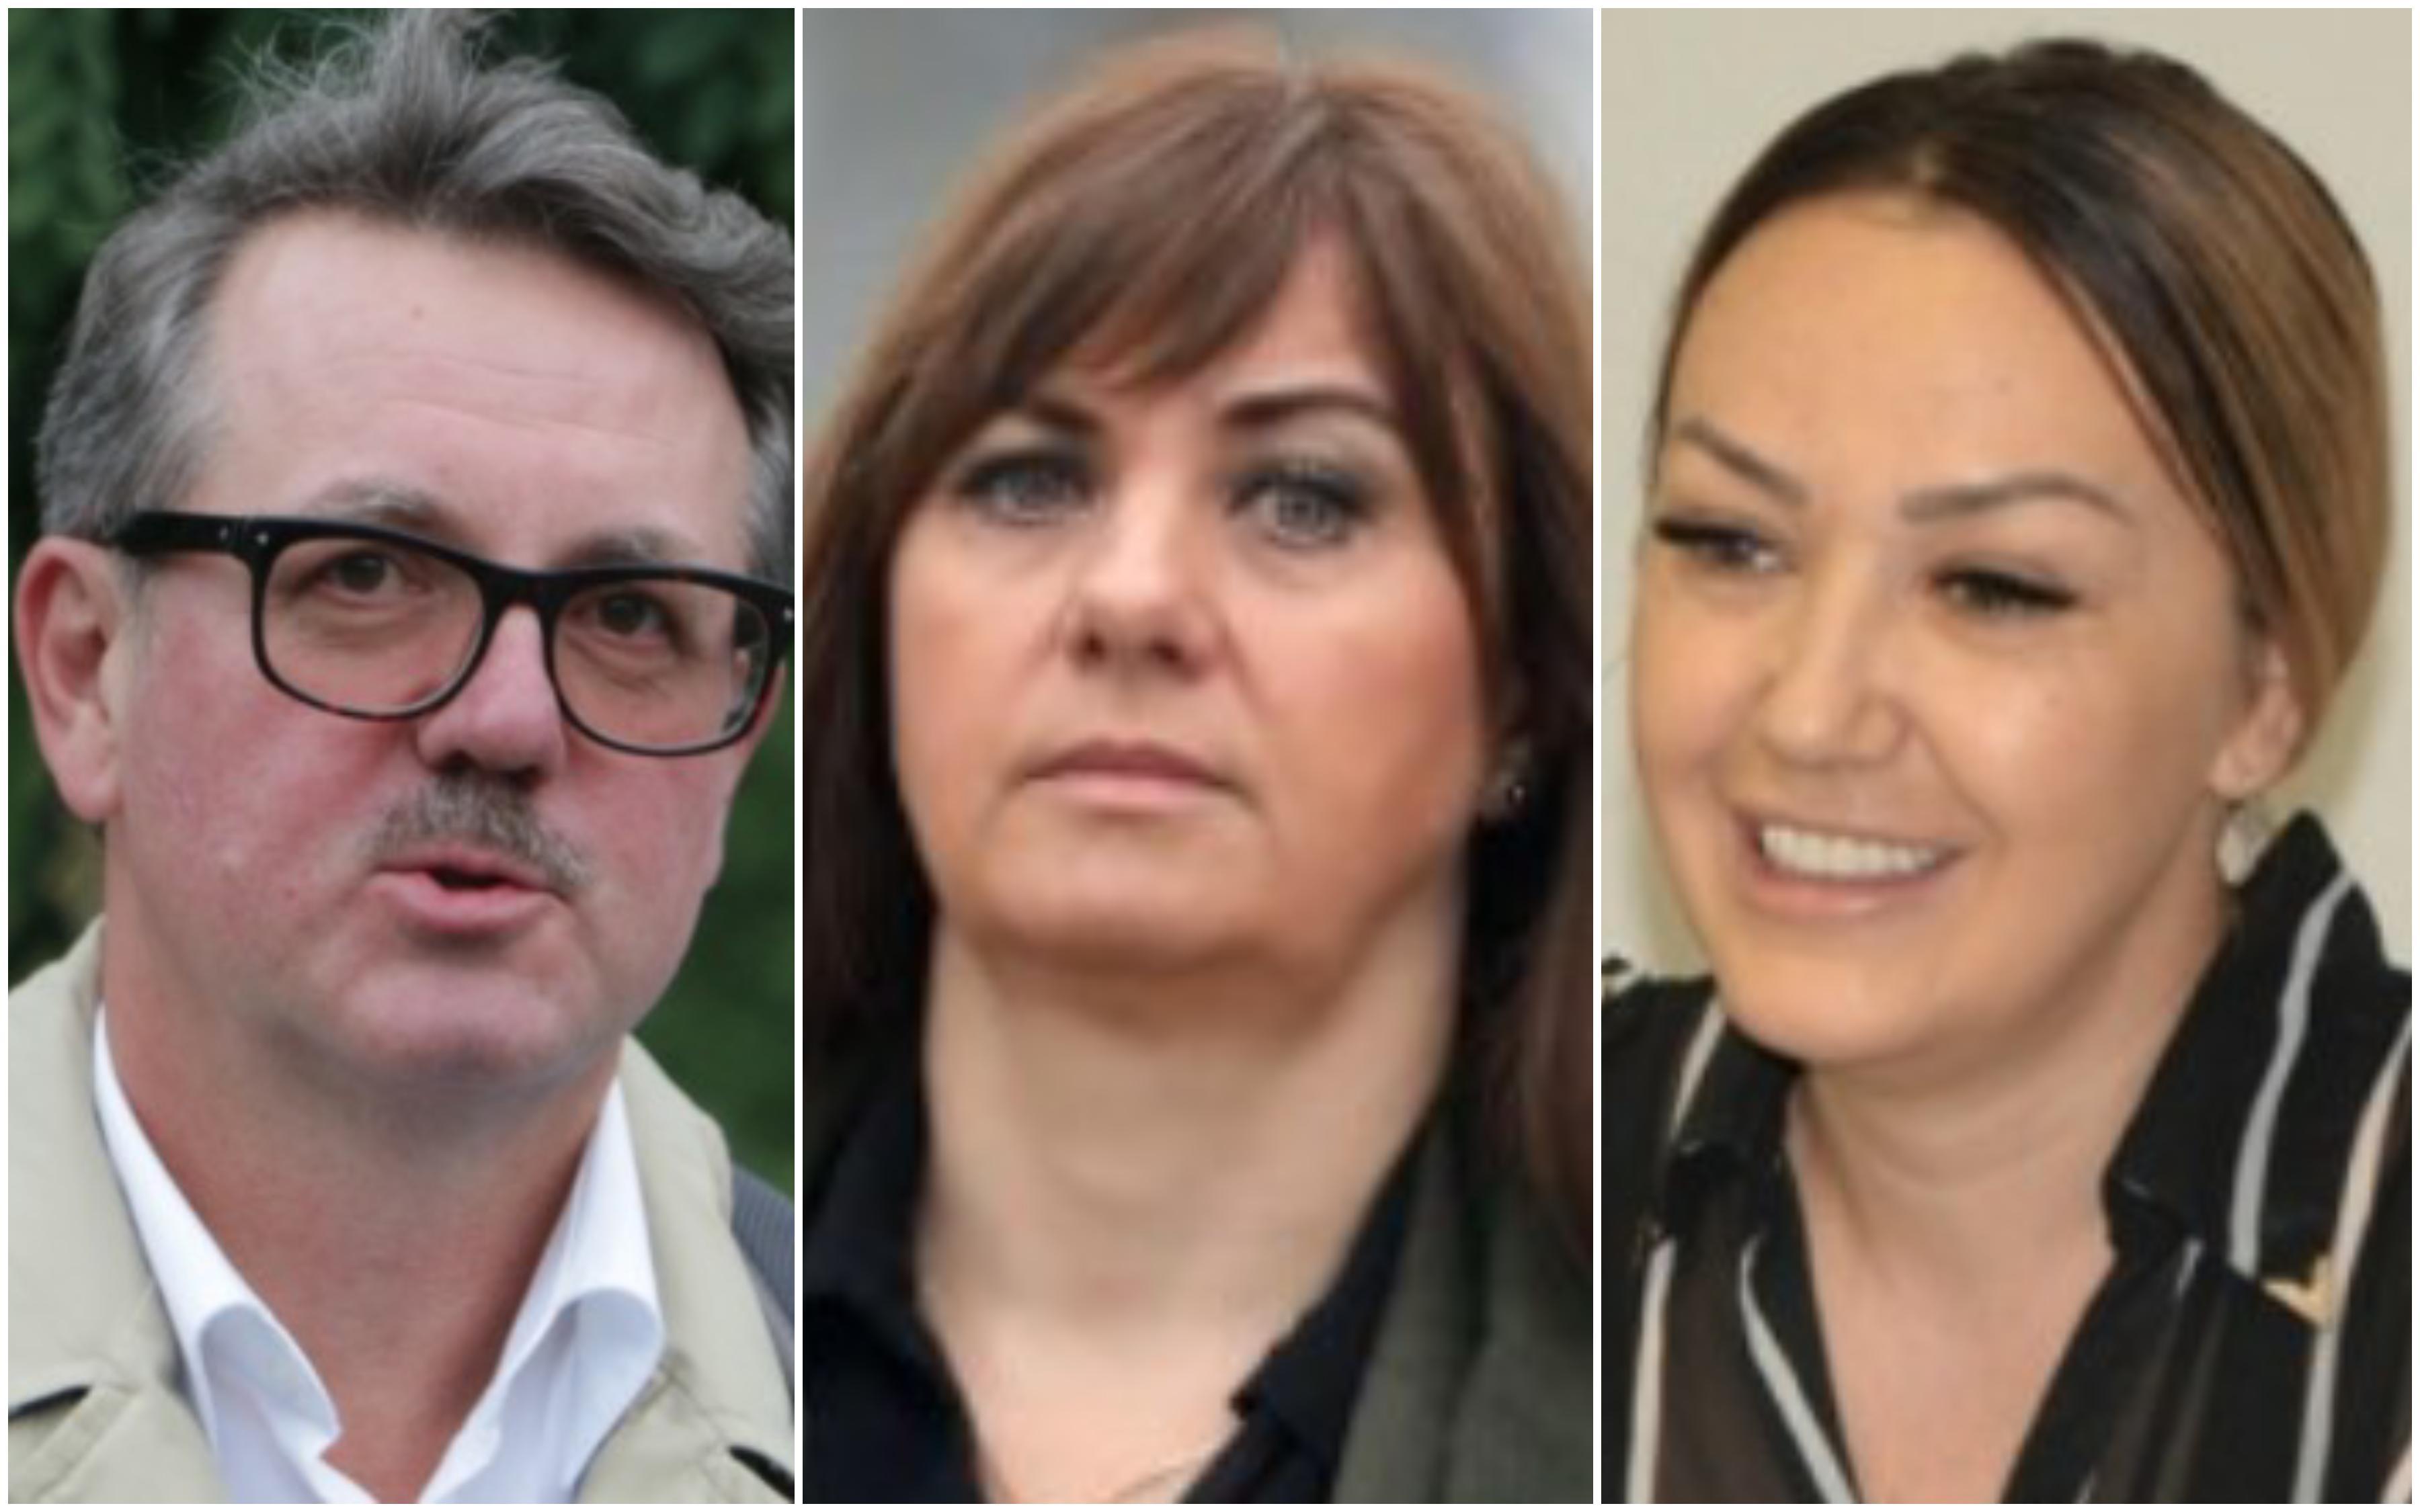 Ključni svjedoci u aferi "Respiratori": Hoće li Ganibegović, Kalajdžić i Alagić odgovarati za lažno svjedočenje?